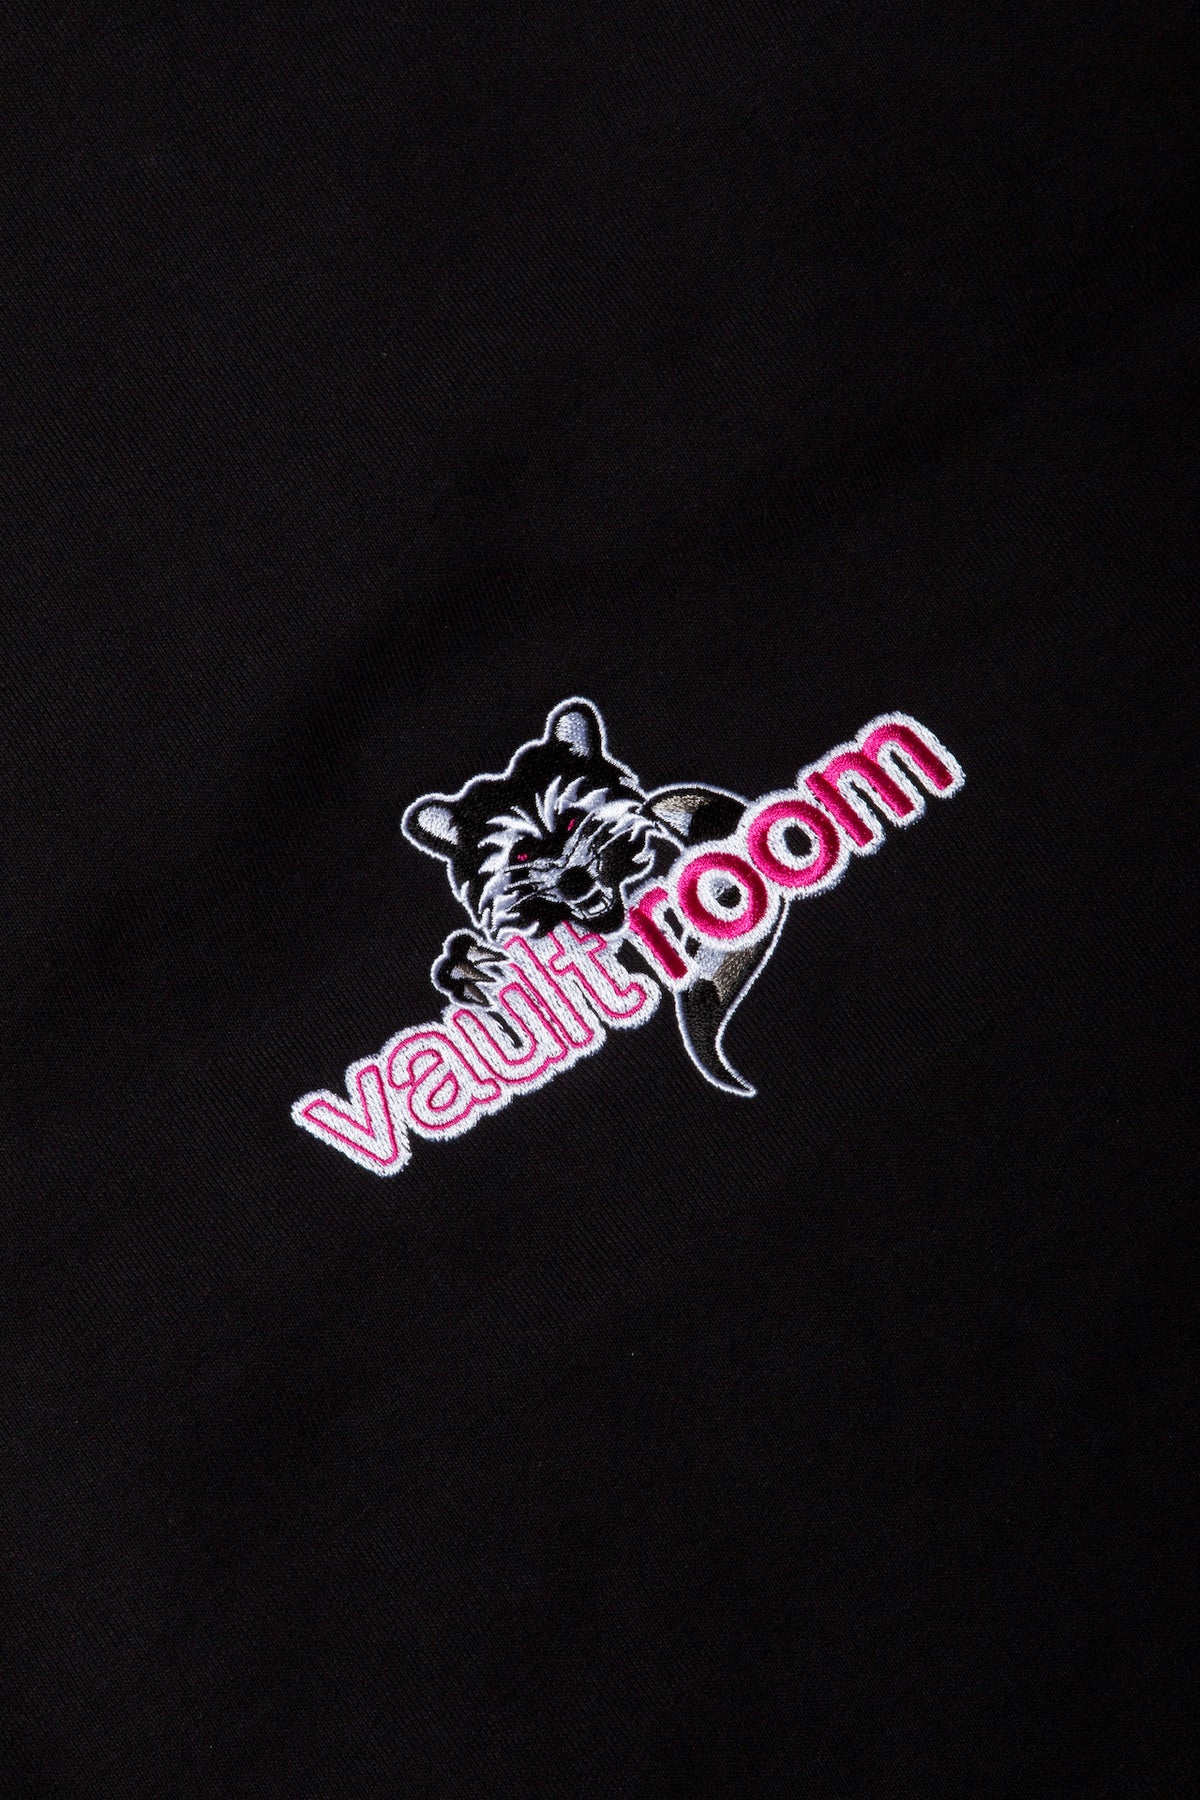 セット売り!!! Tシャツ パーカー vaultroom × Selly